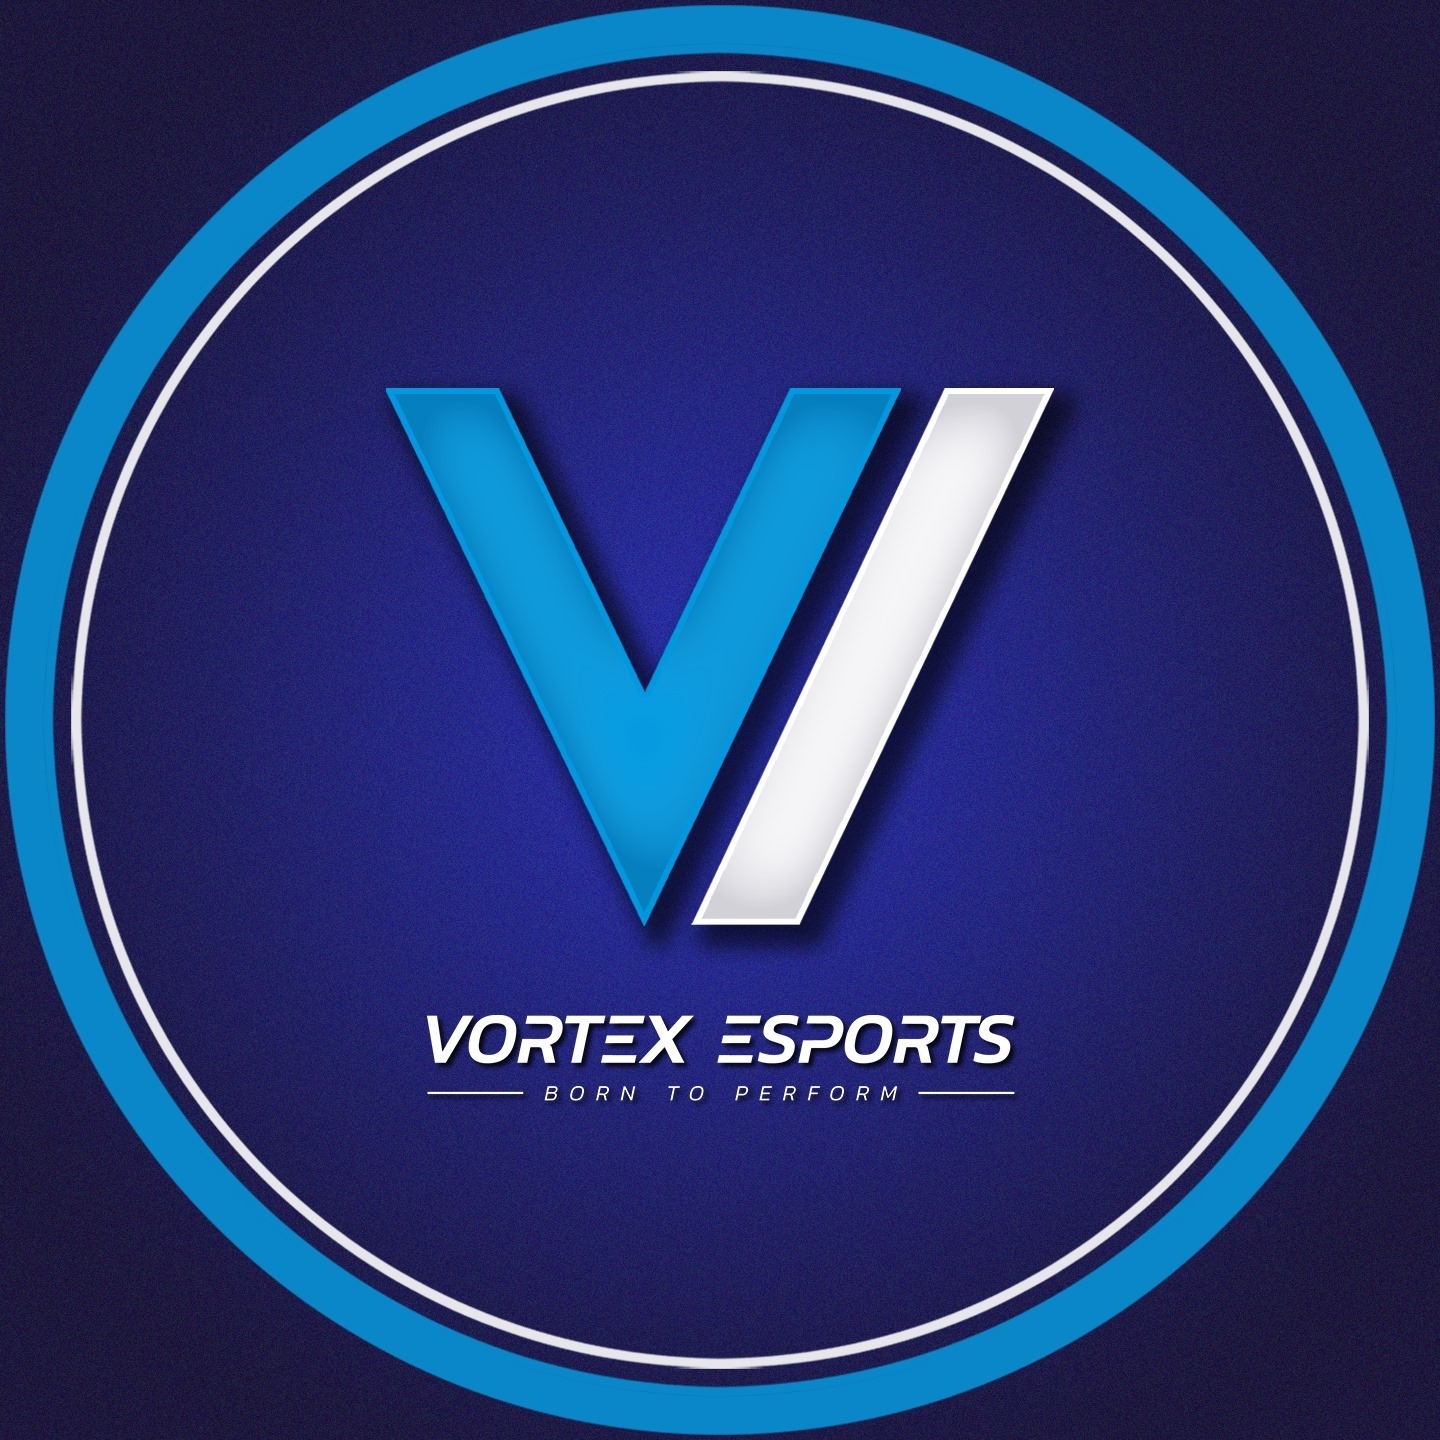 VRX Vortex e-sports